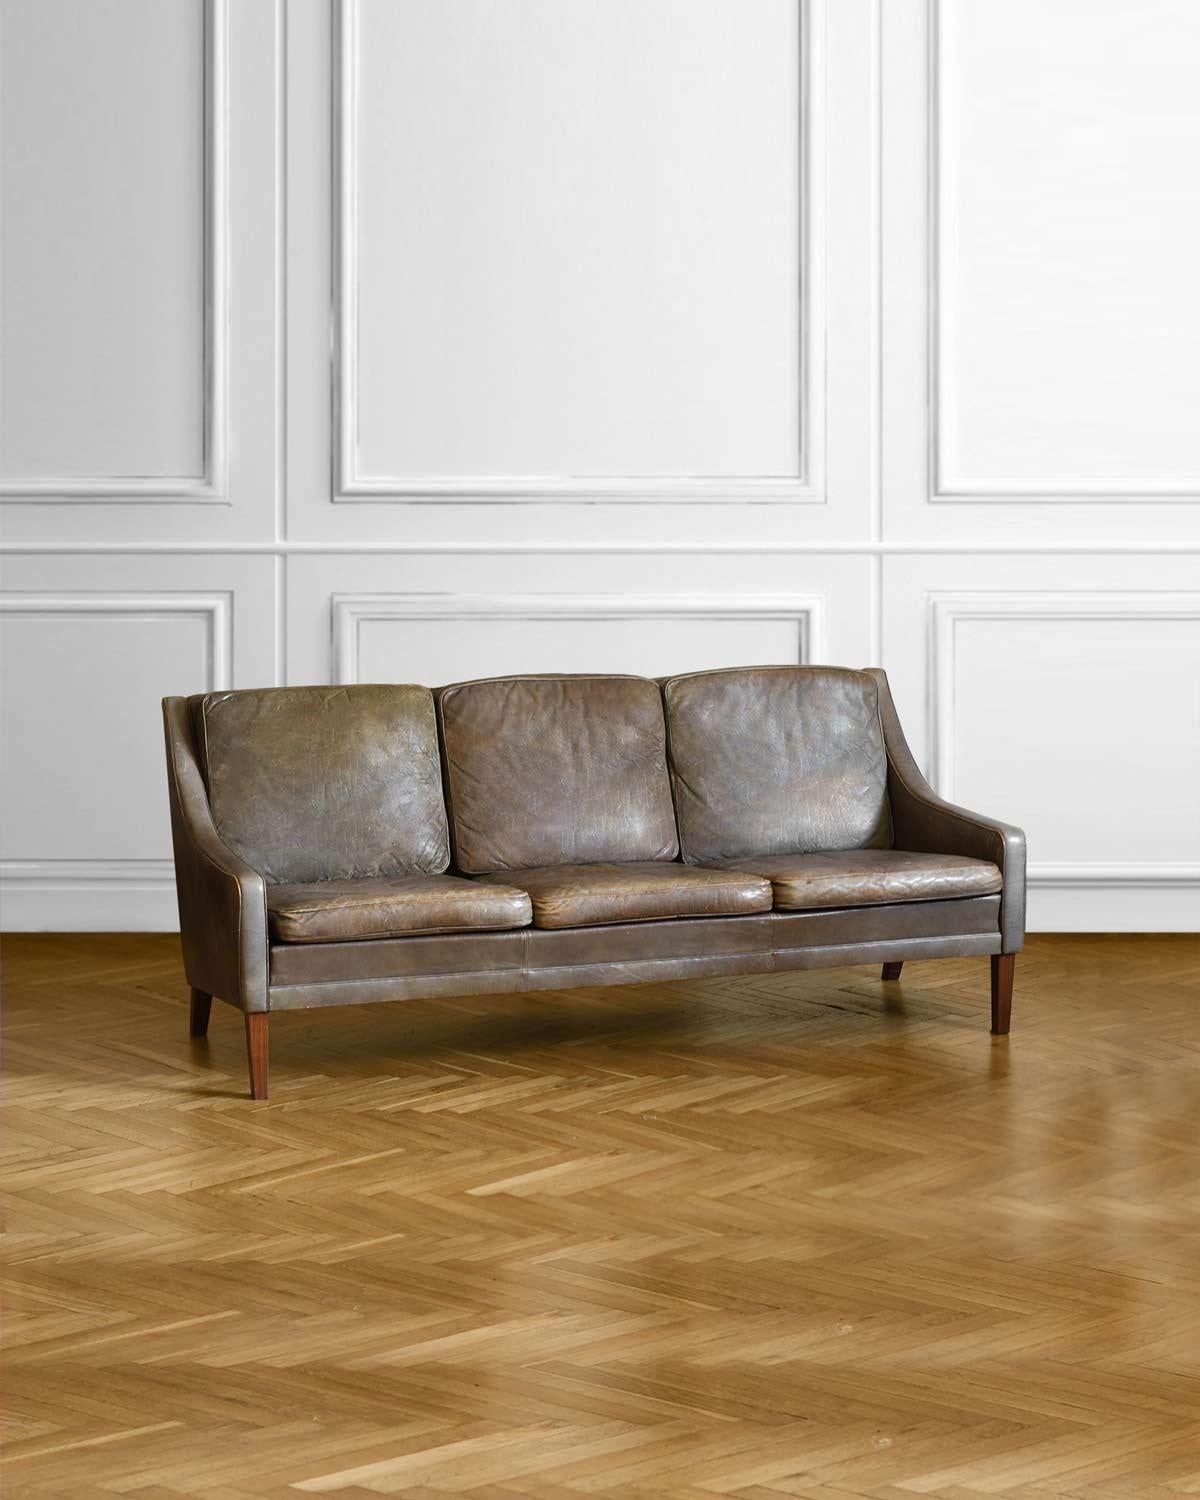 Canapé en cuir du milieu du siècle avec pieds en bois
Dimensions : 193w x 90h x 80d cm
Matériaux : cuir, bois.
Production italienne